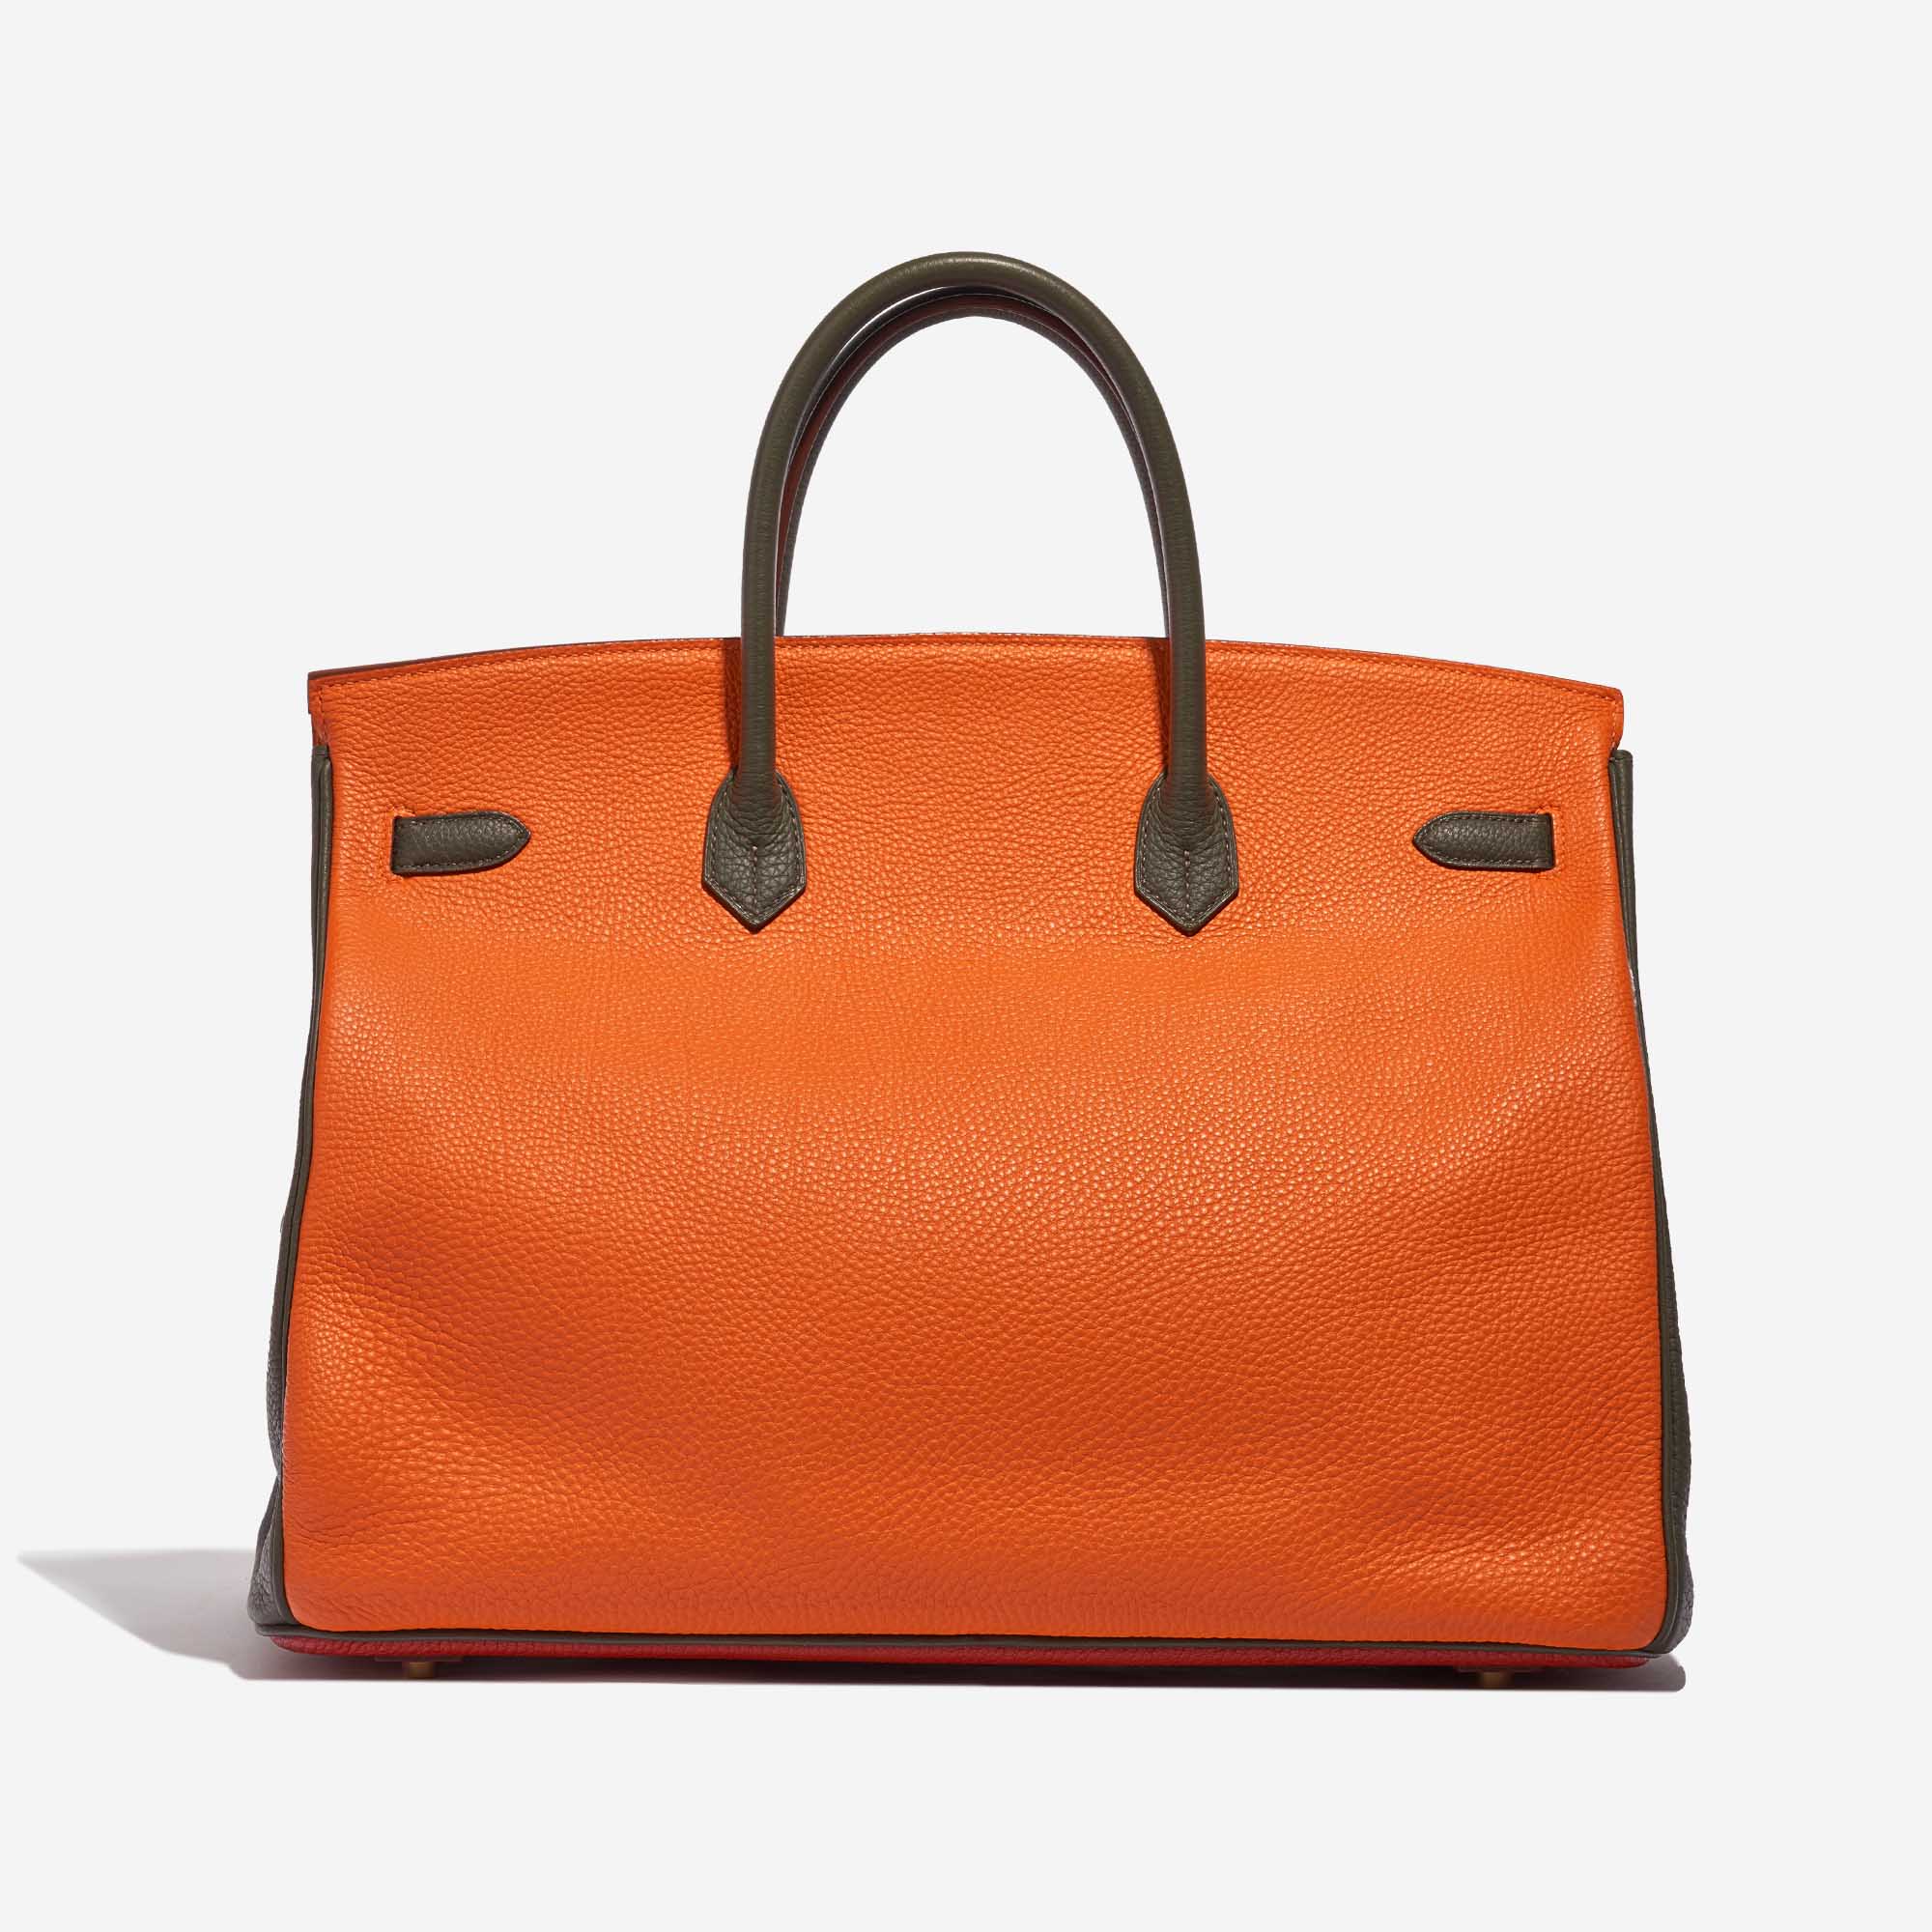 Sac Hermès d'occasion Birkin 40 HSS Togo Orange H / Olive / Vermillon Multicolore, Orange, Rouge Dos | Vendez votre sac de créateur sur Saclab.com